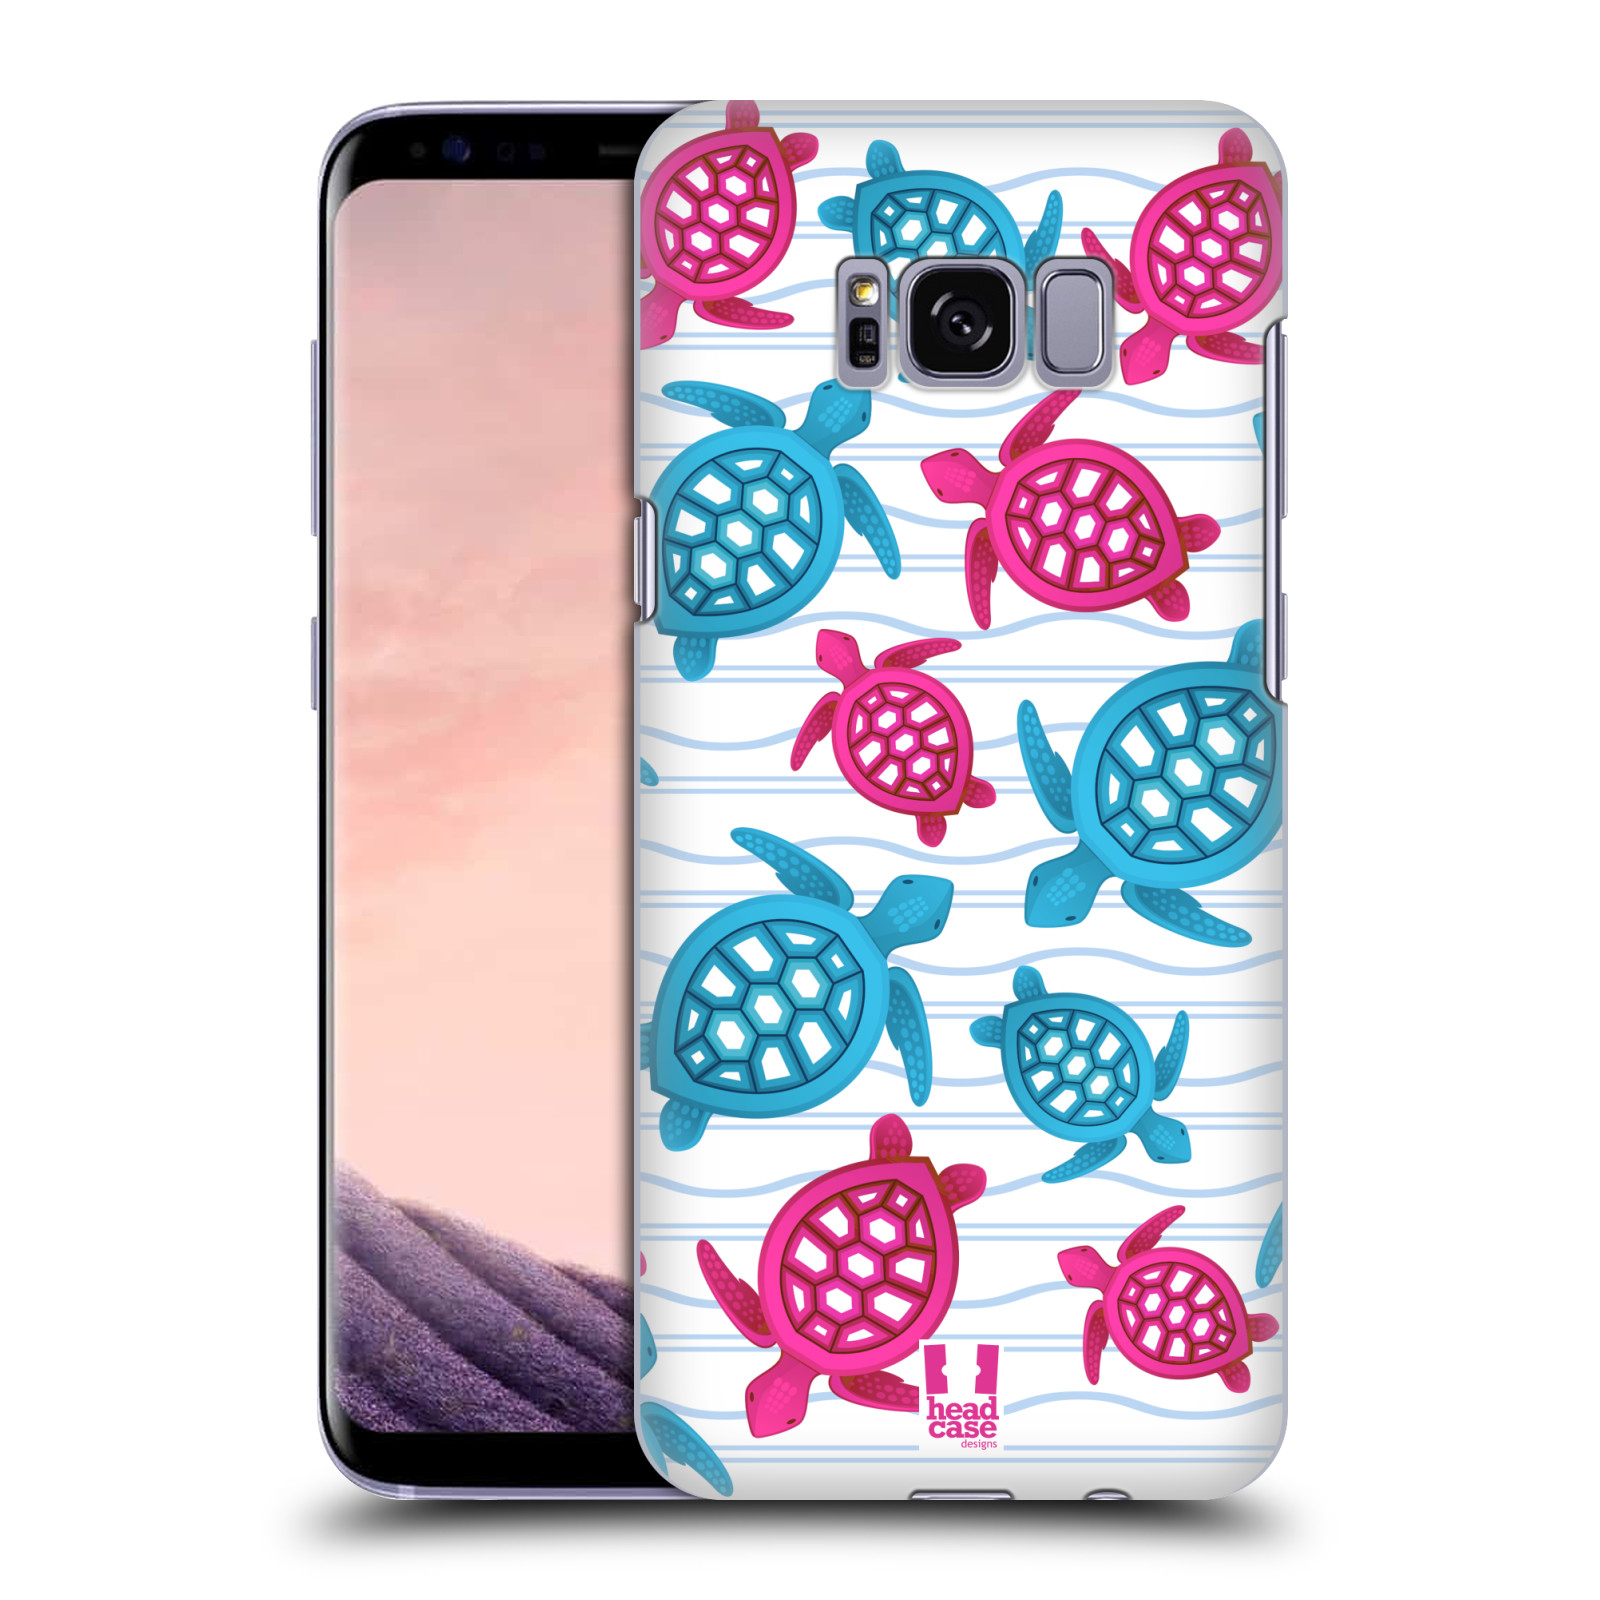 Zadní obal pro mobil Samsung Galaxy S8 - HEAD CASE - kreslený mořský vzor želvičky